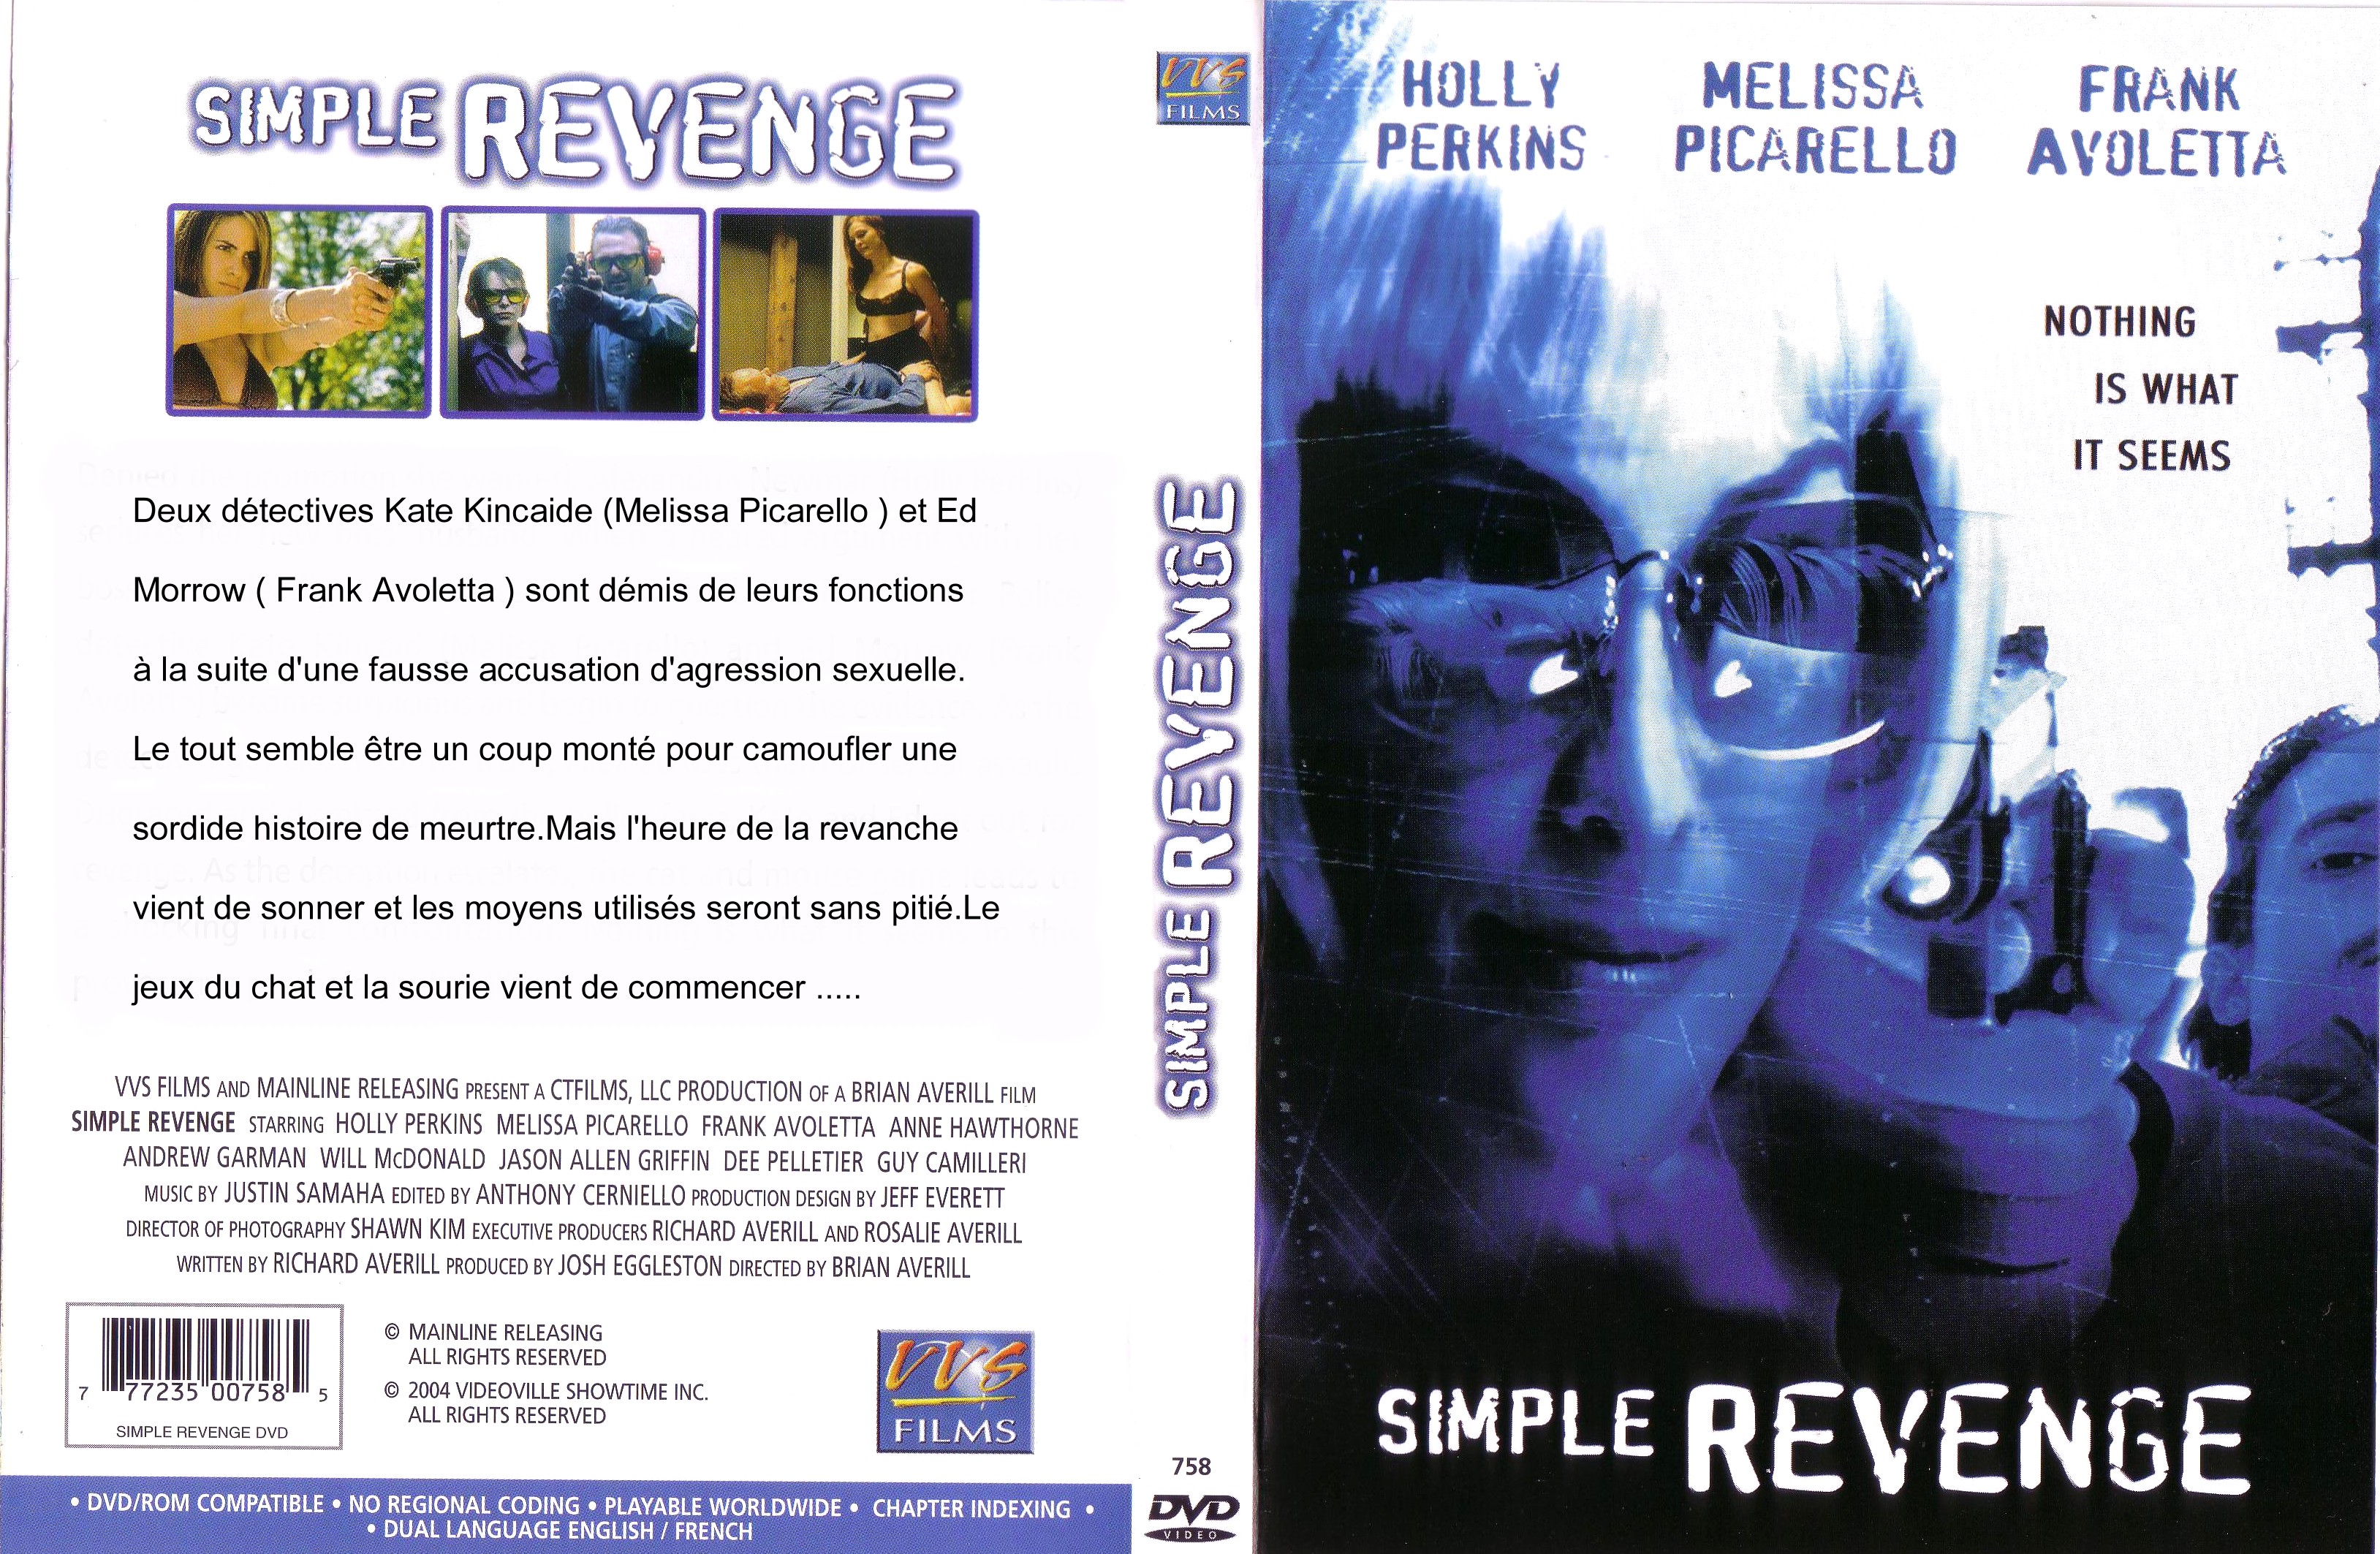 Jaquette DVD Simple revenge